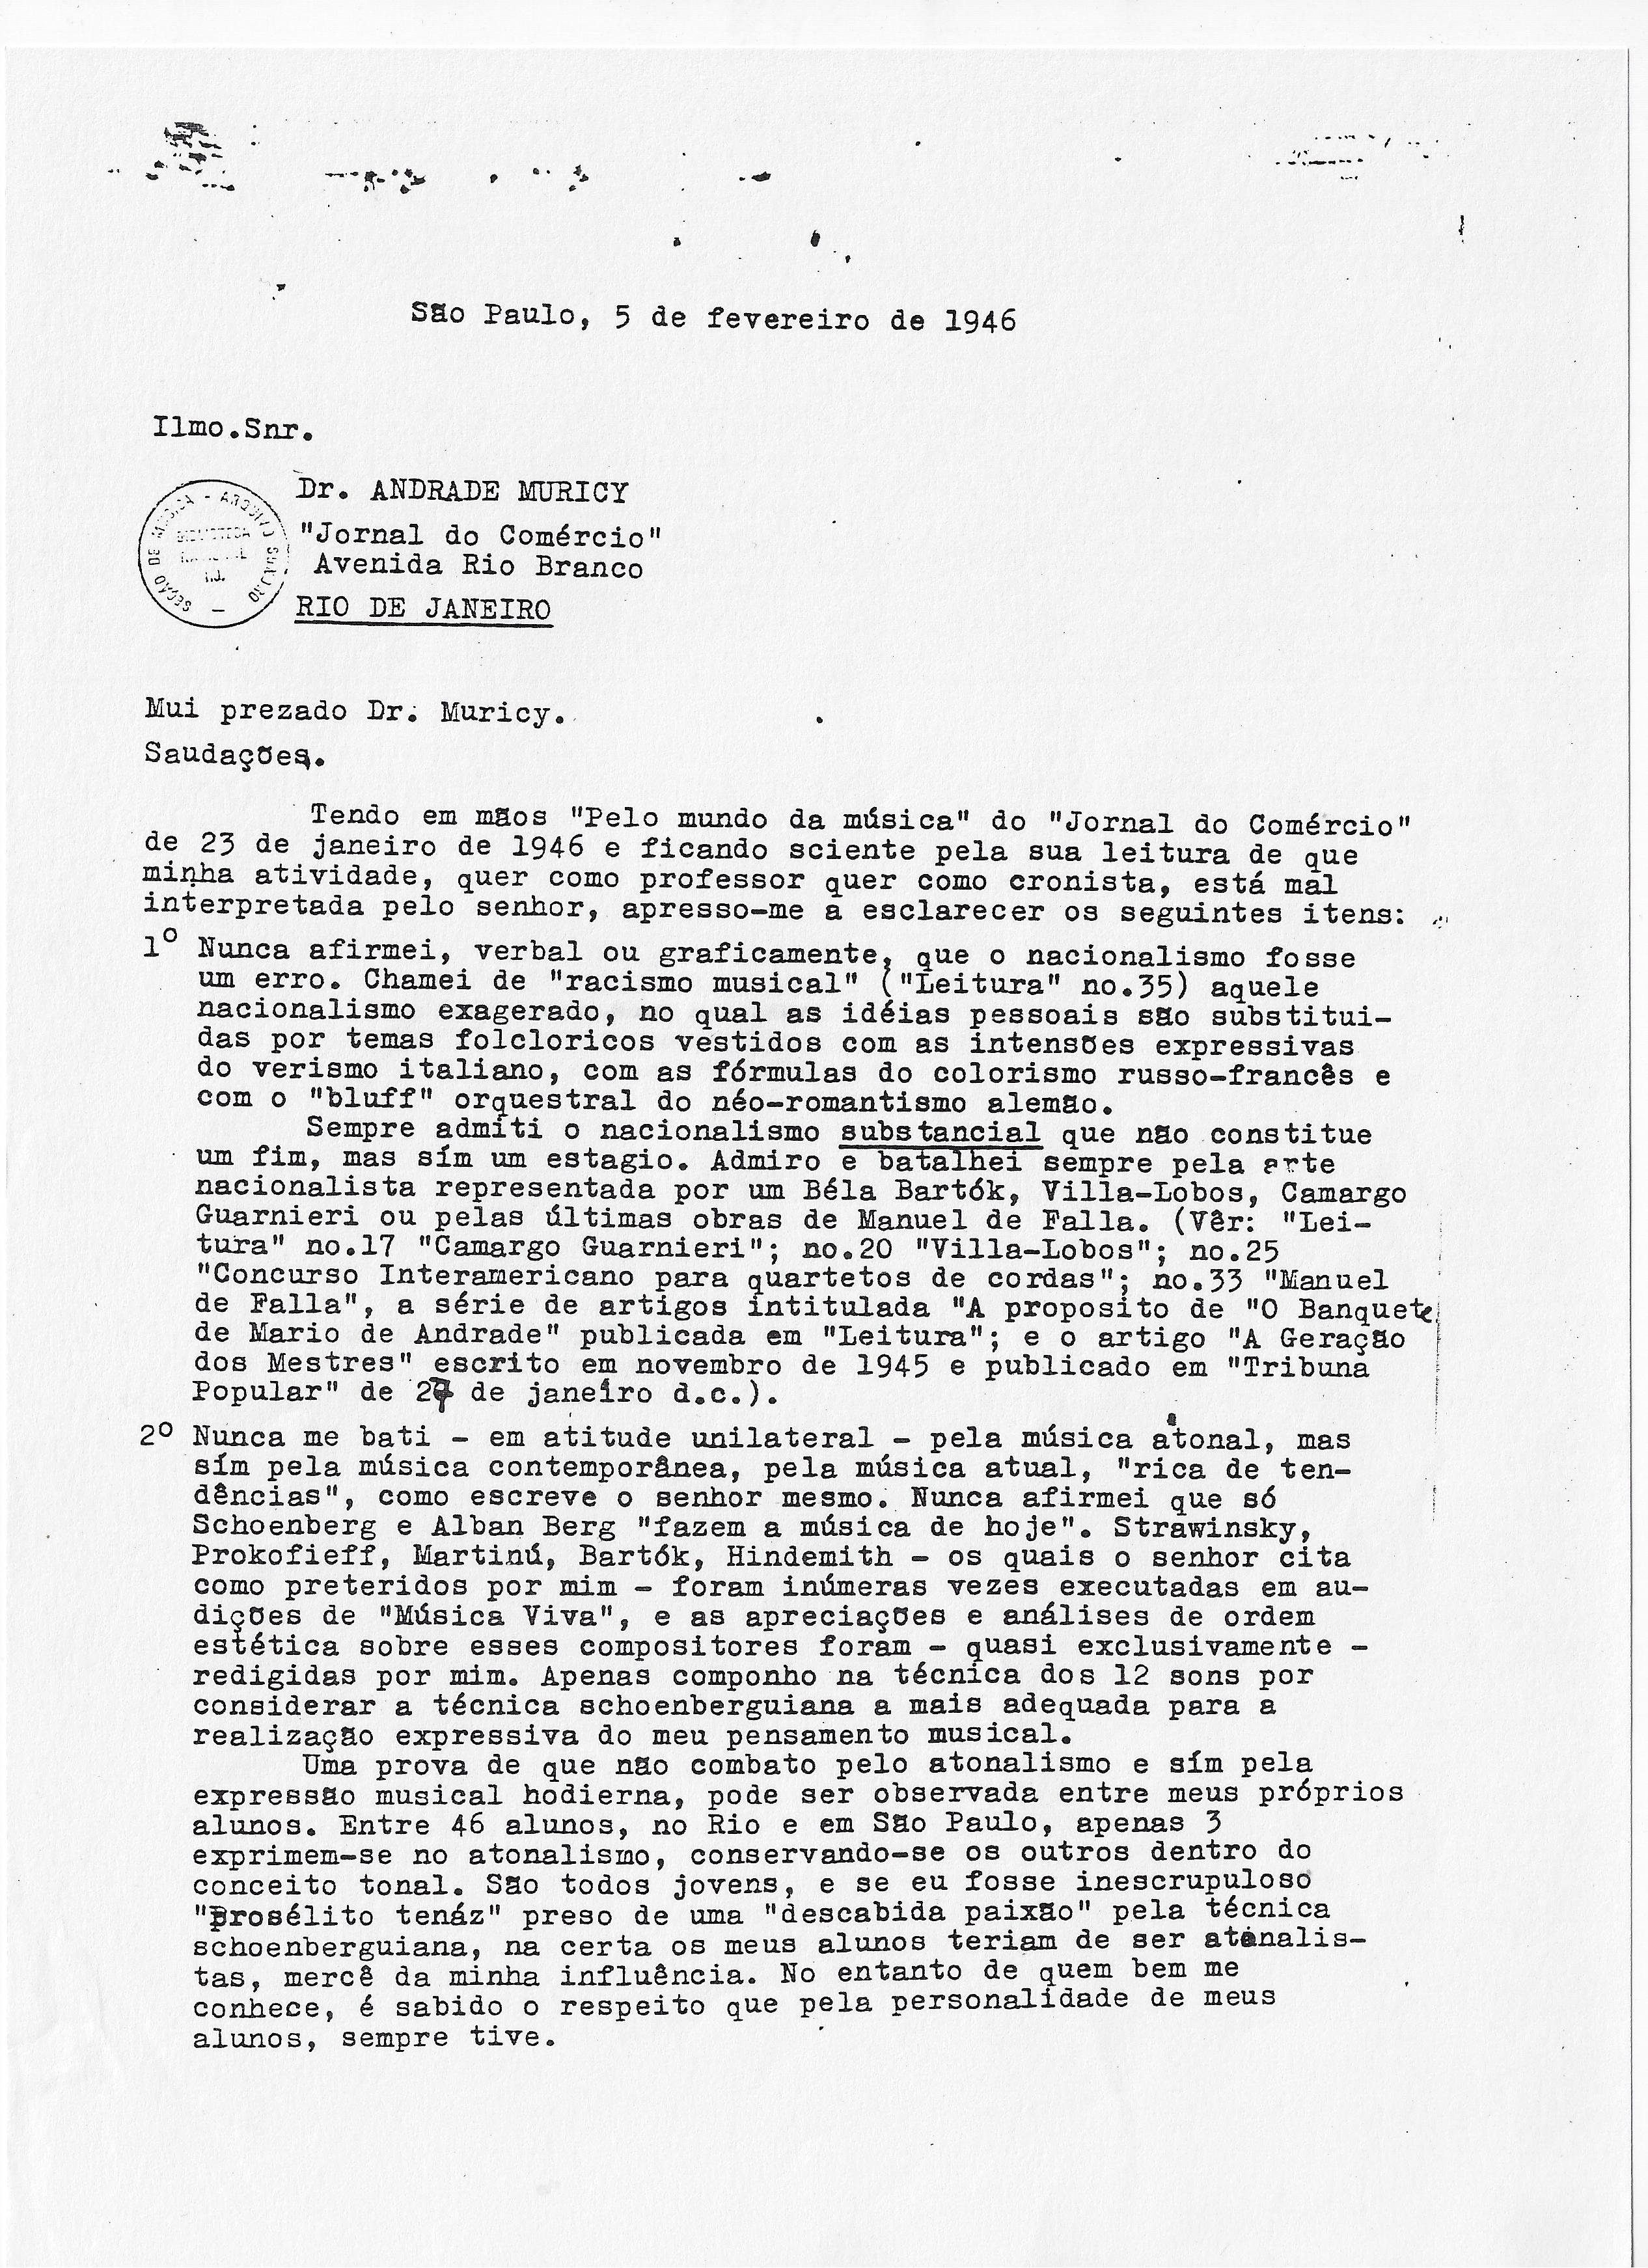 Carta de Koellreutter a Andrade Muricy em 05 de fevereiro de 1946